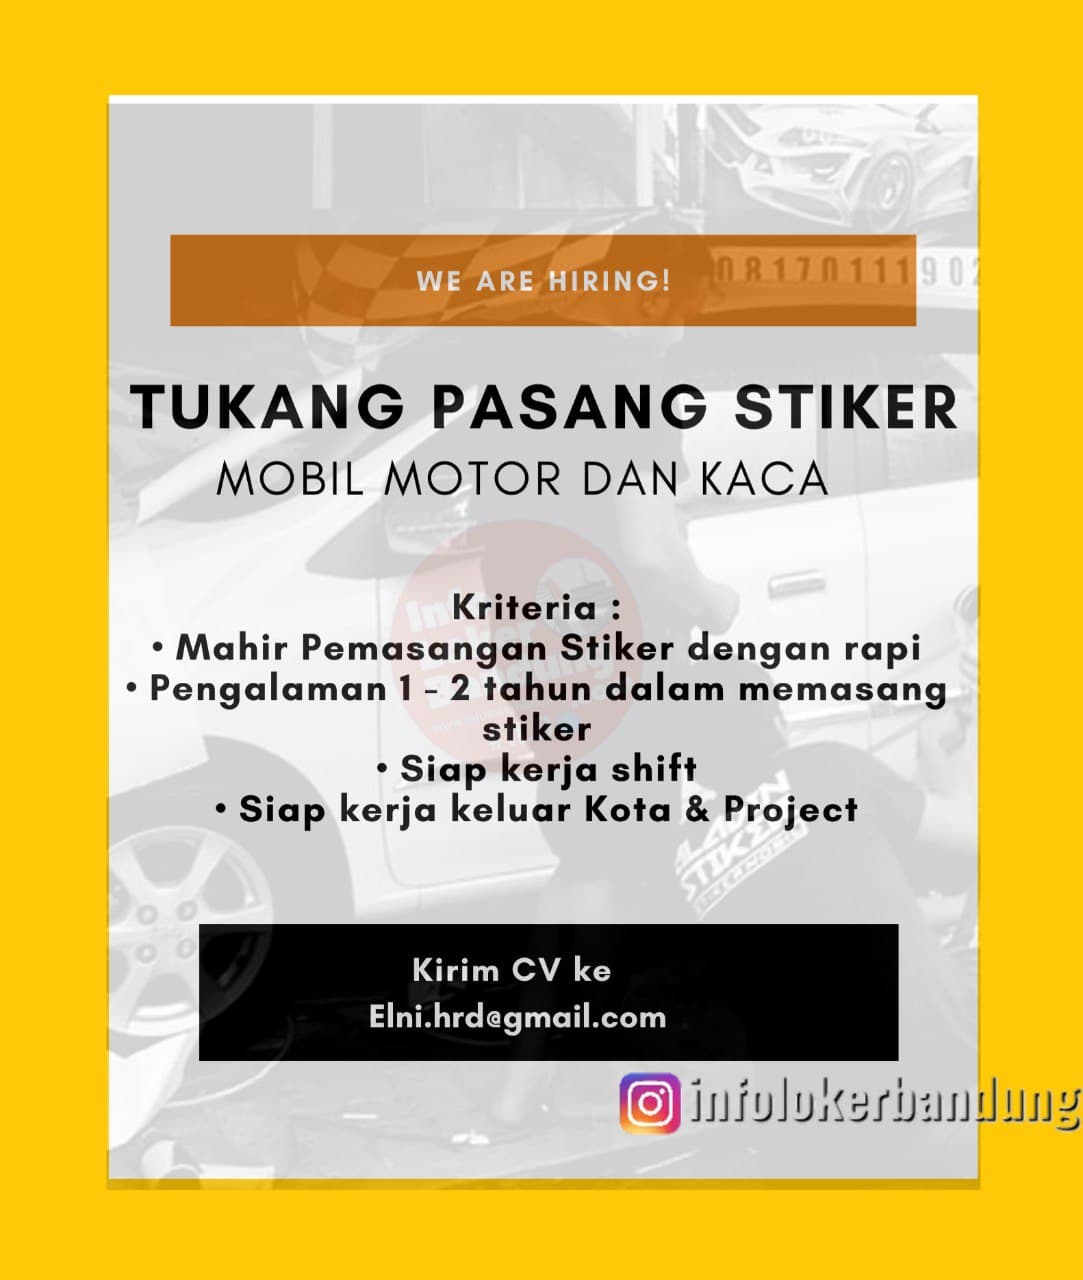 Lowongan Kerja Tukang Pasang Stiker PT. ELNI Bandung November 2021